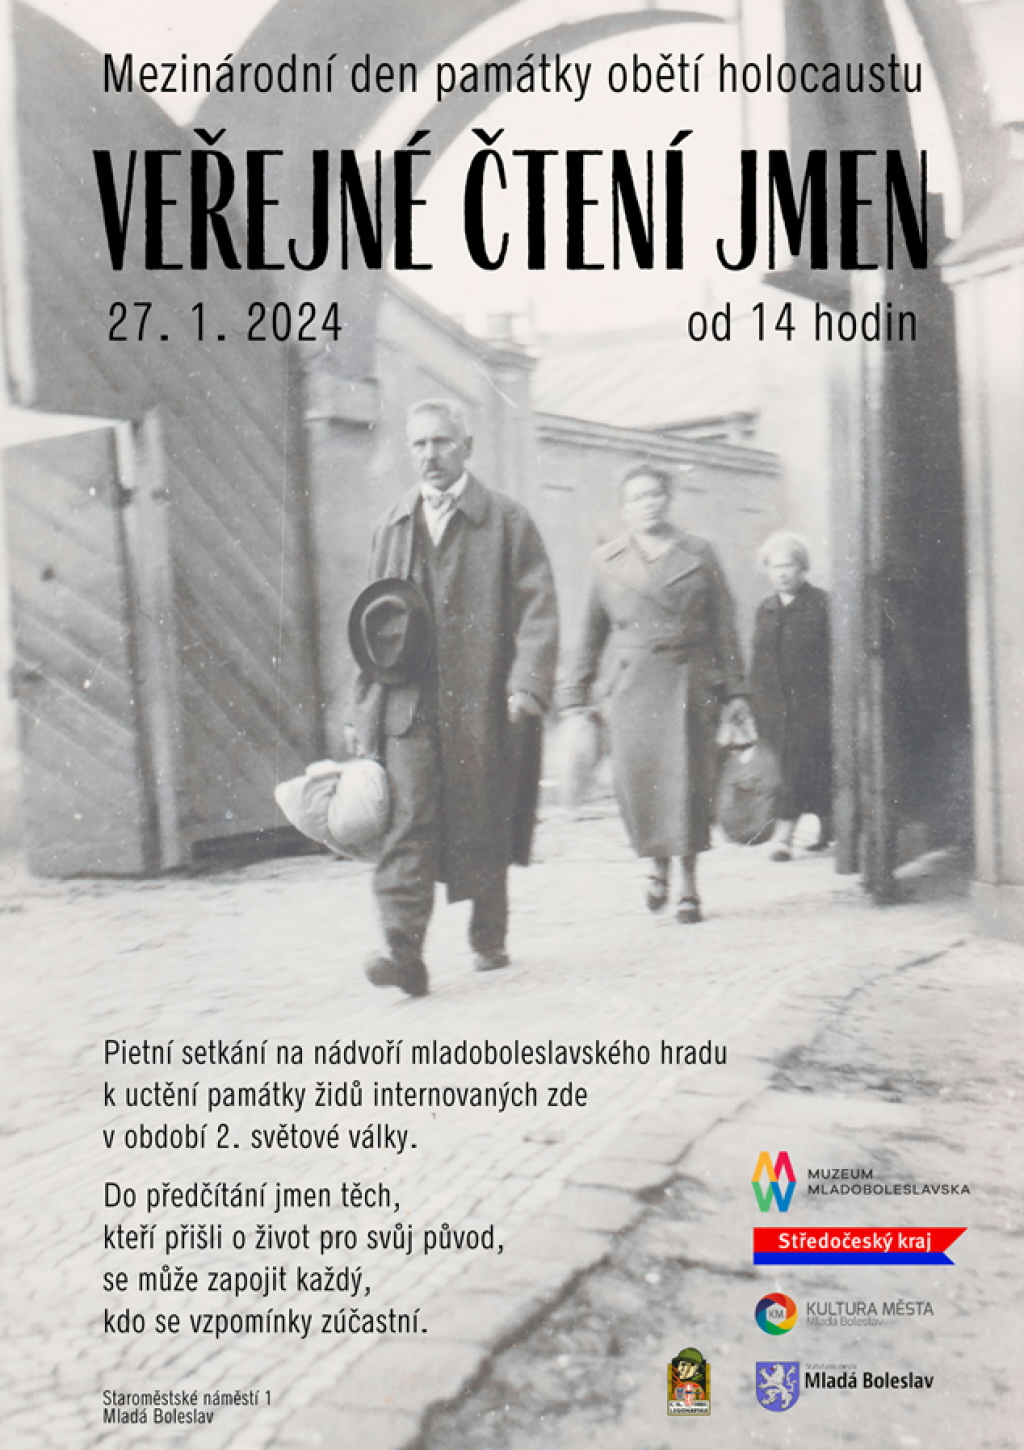 Muzeum Mladoboleslavska tradičně připomene Mezinárodní den památky obětí holocaustu veřejným čtením jmen obětí. Patřili mezi ně i Židé z Mnichovohradišťska